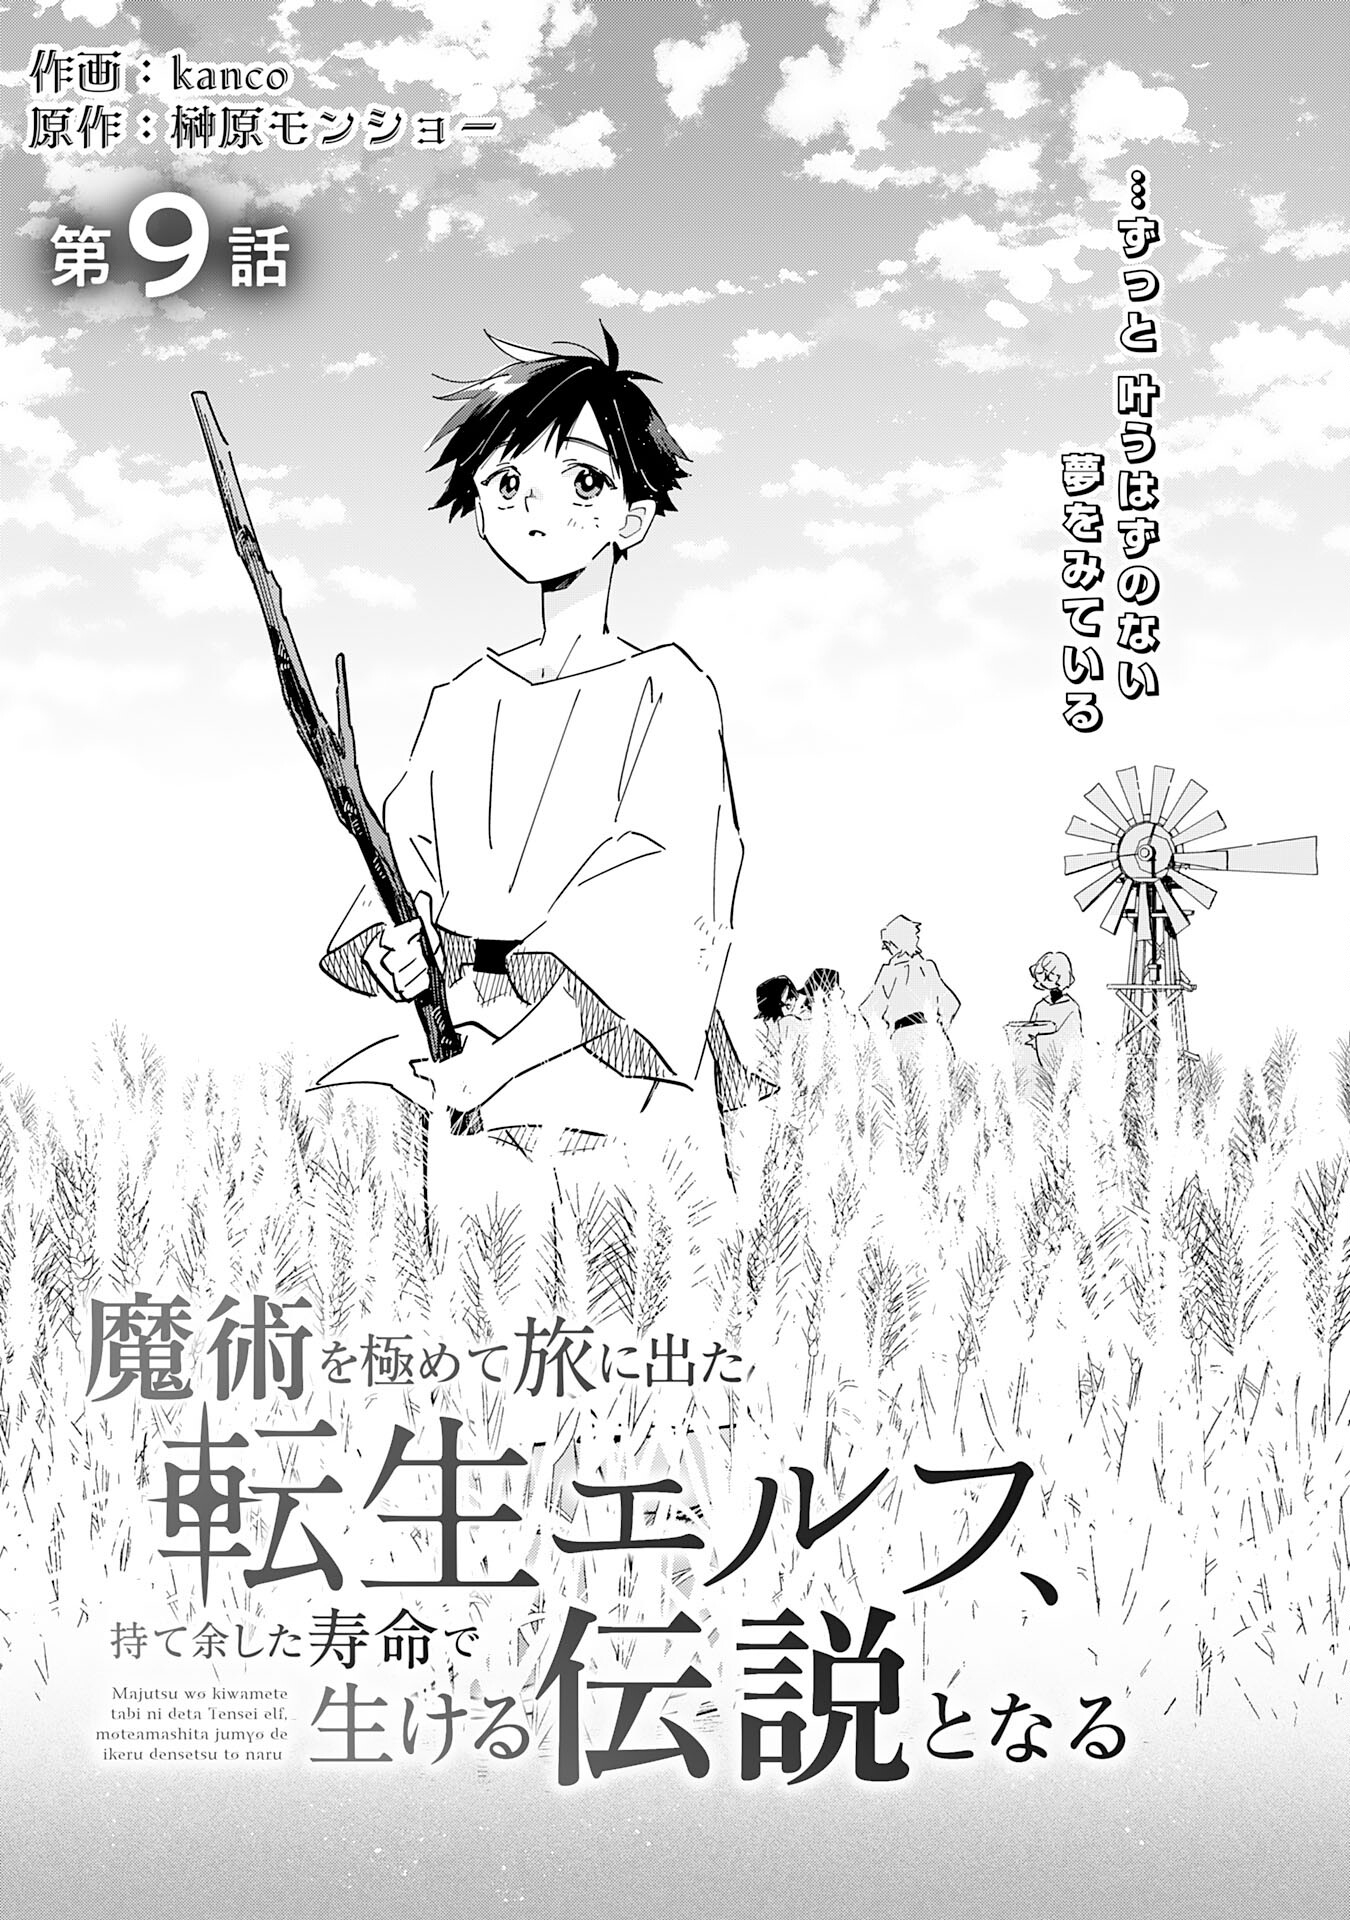 Majutsu wo Kiwamete Tabi ni Deta Tensei Elf, Moteamashita Jumyou de Ikeru Densetsu to naru - Chapter 9 - Page 1